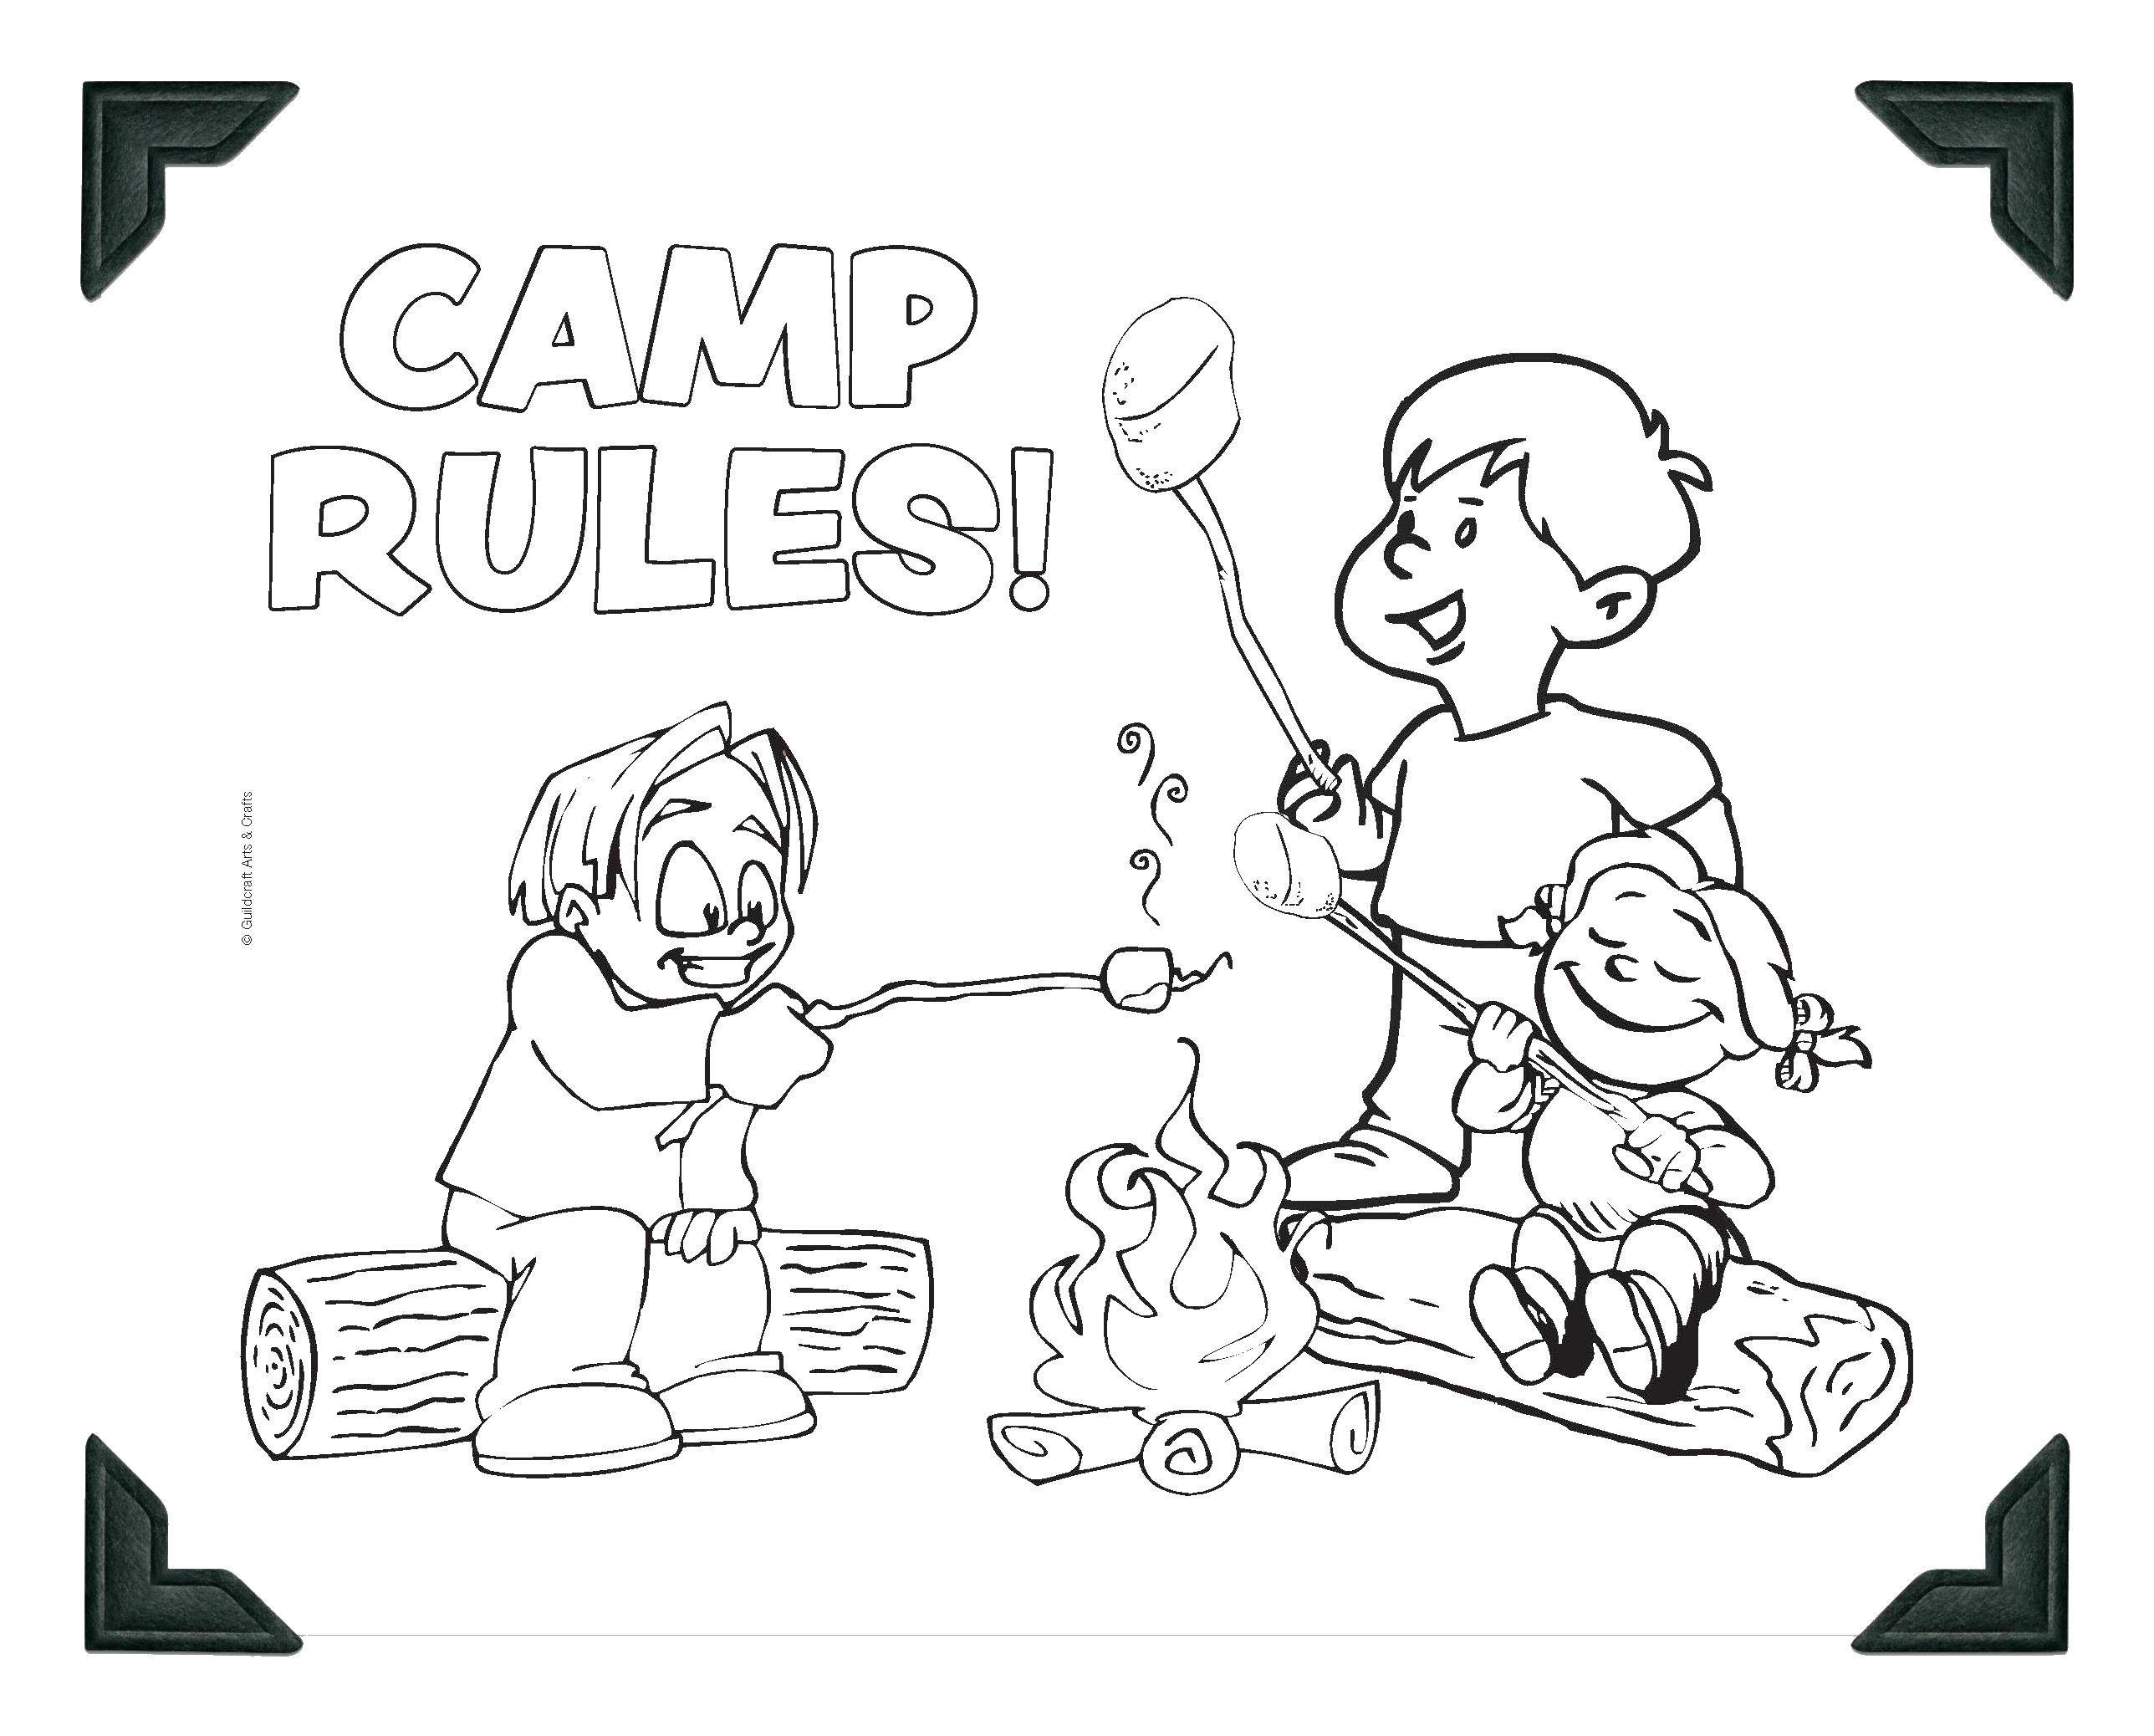 Опис: розмальовки  Правила для табору. Категорія: Відпочинок на природі. Теги:  відпочинок, природа, похід, табір.